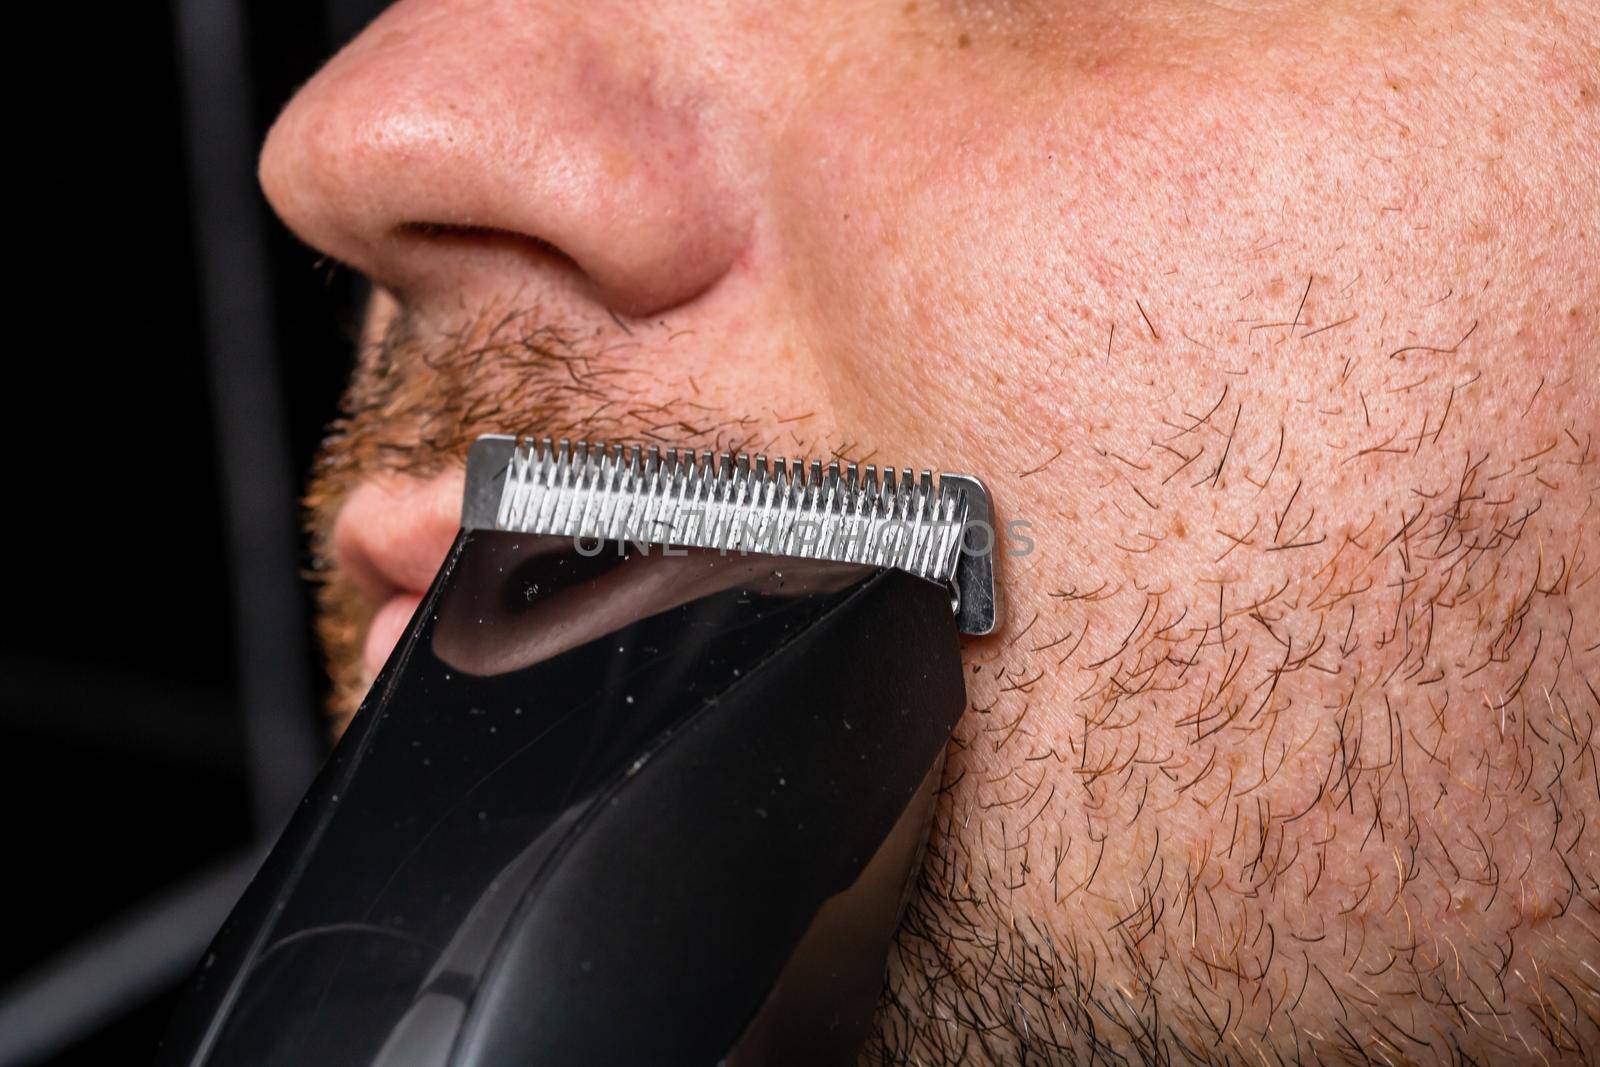 Man shaving or trimming his beard using a hair clipper